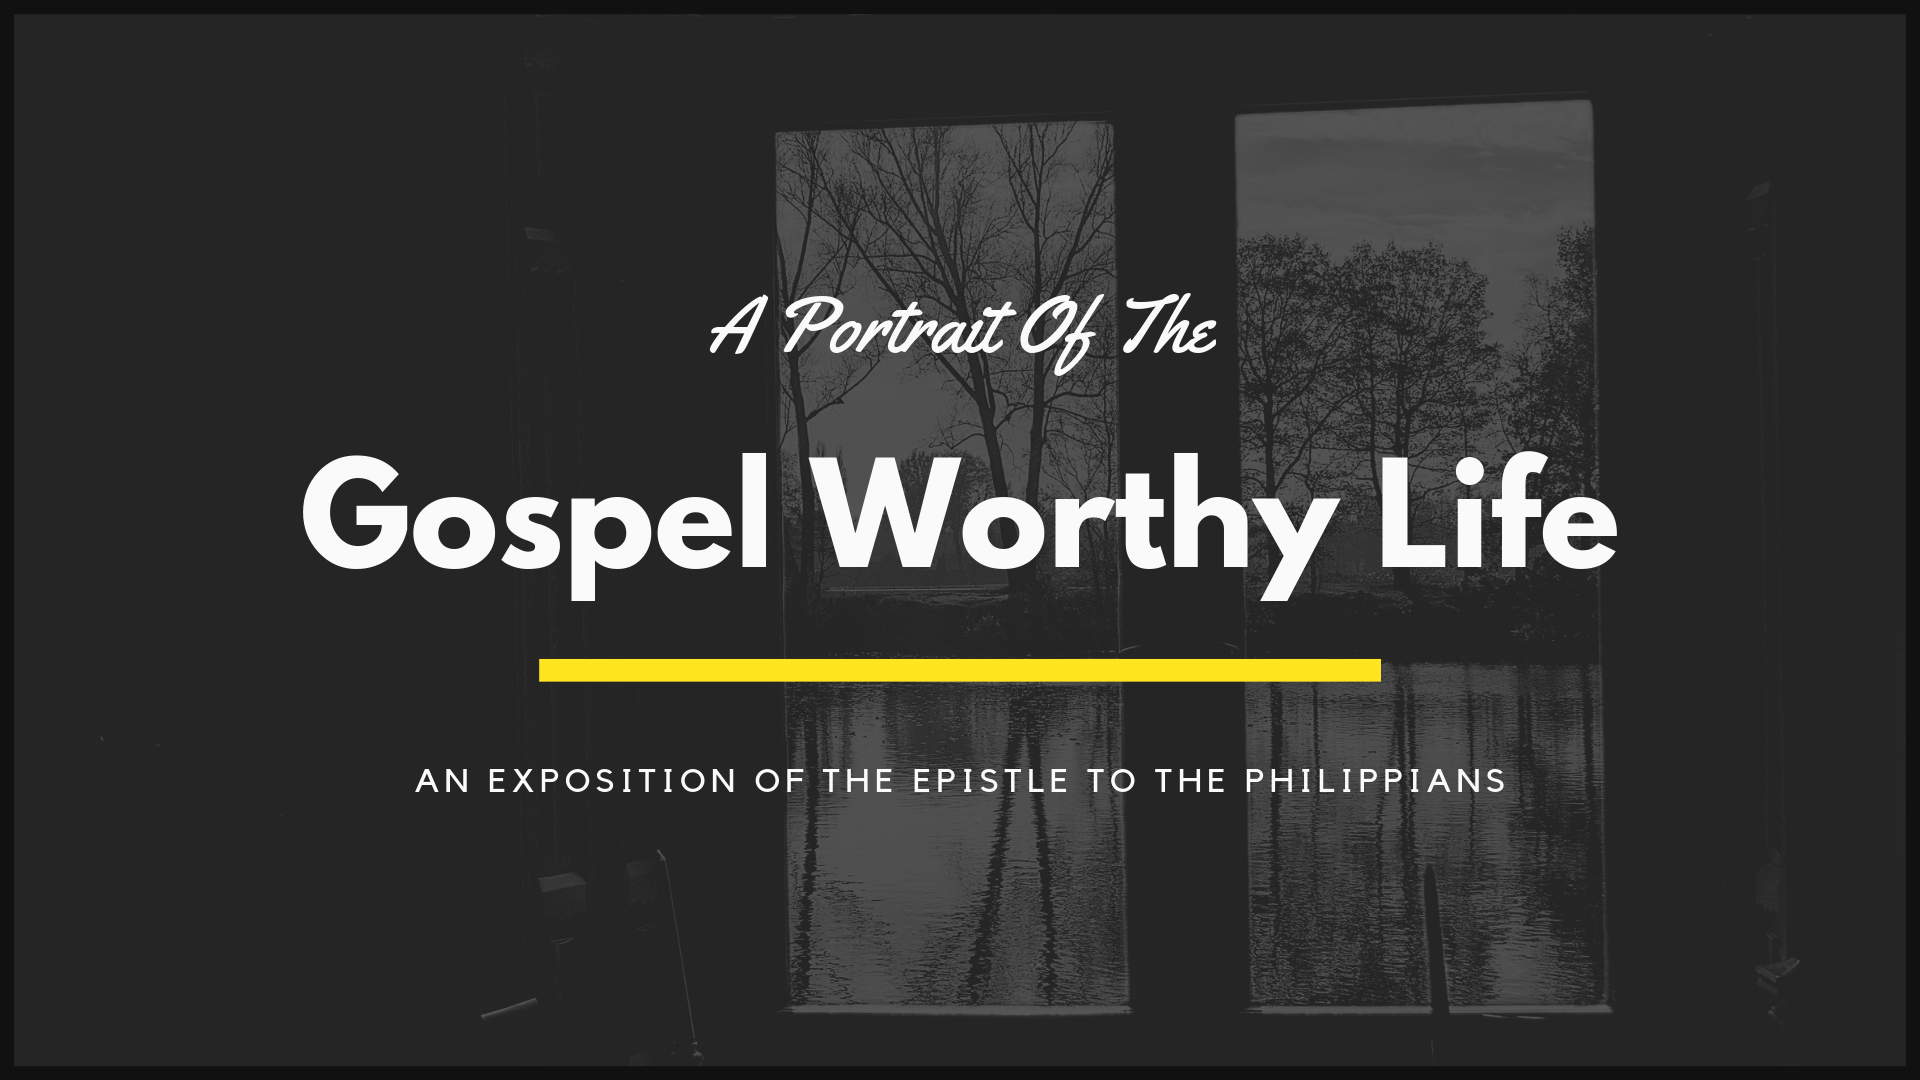 The Life Worthy of the Gospel, Part II